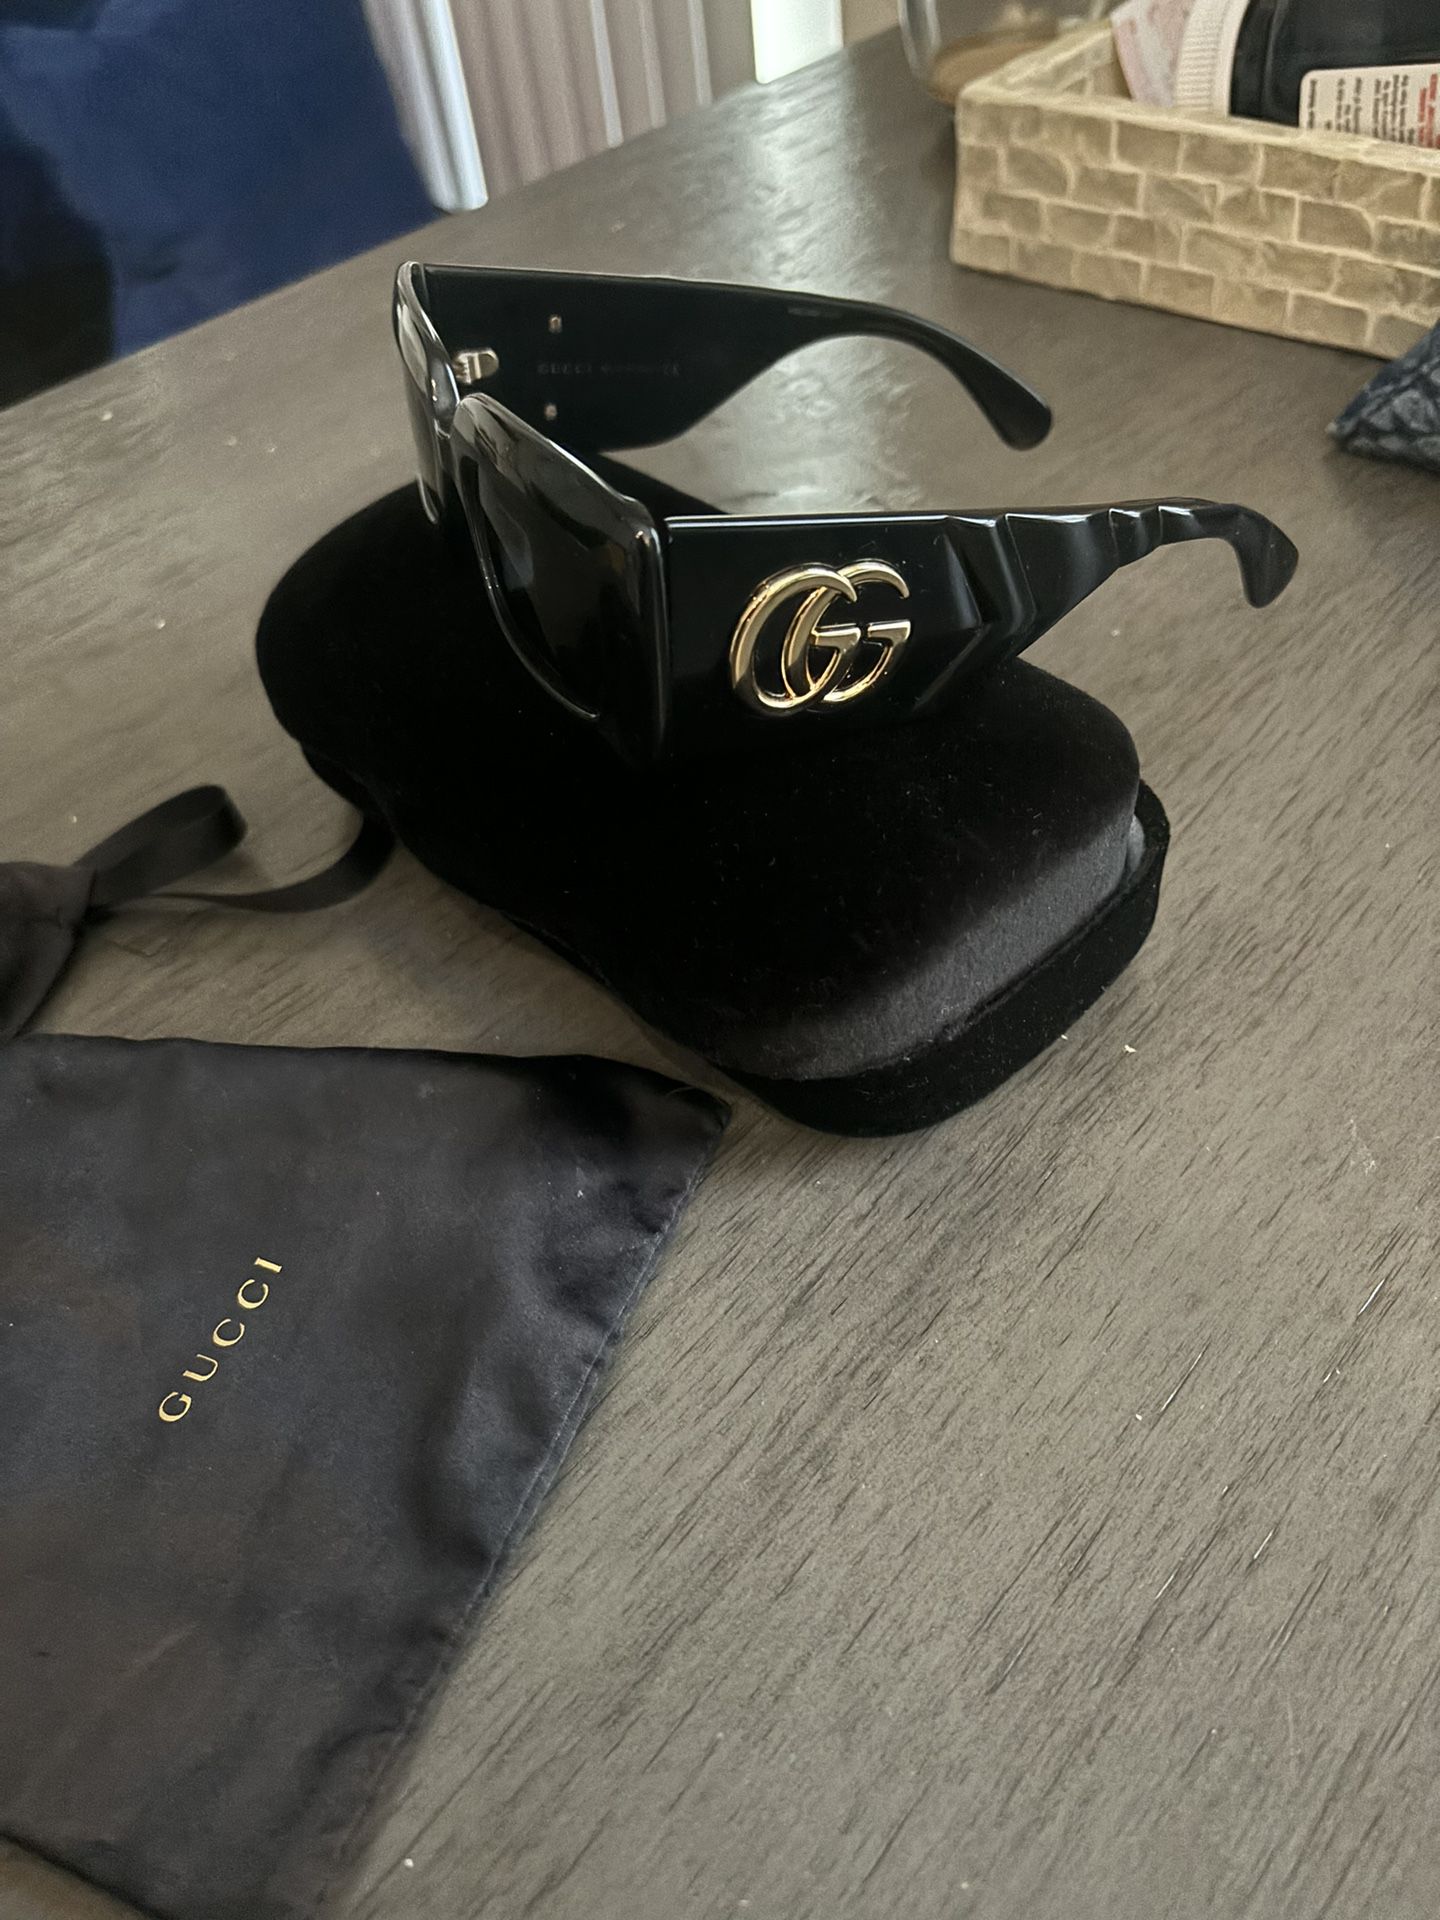 Gucci sunglasses 